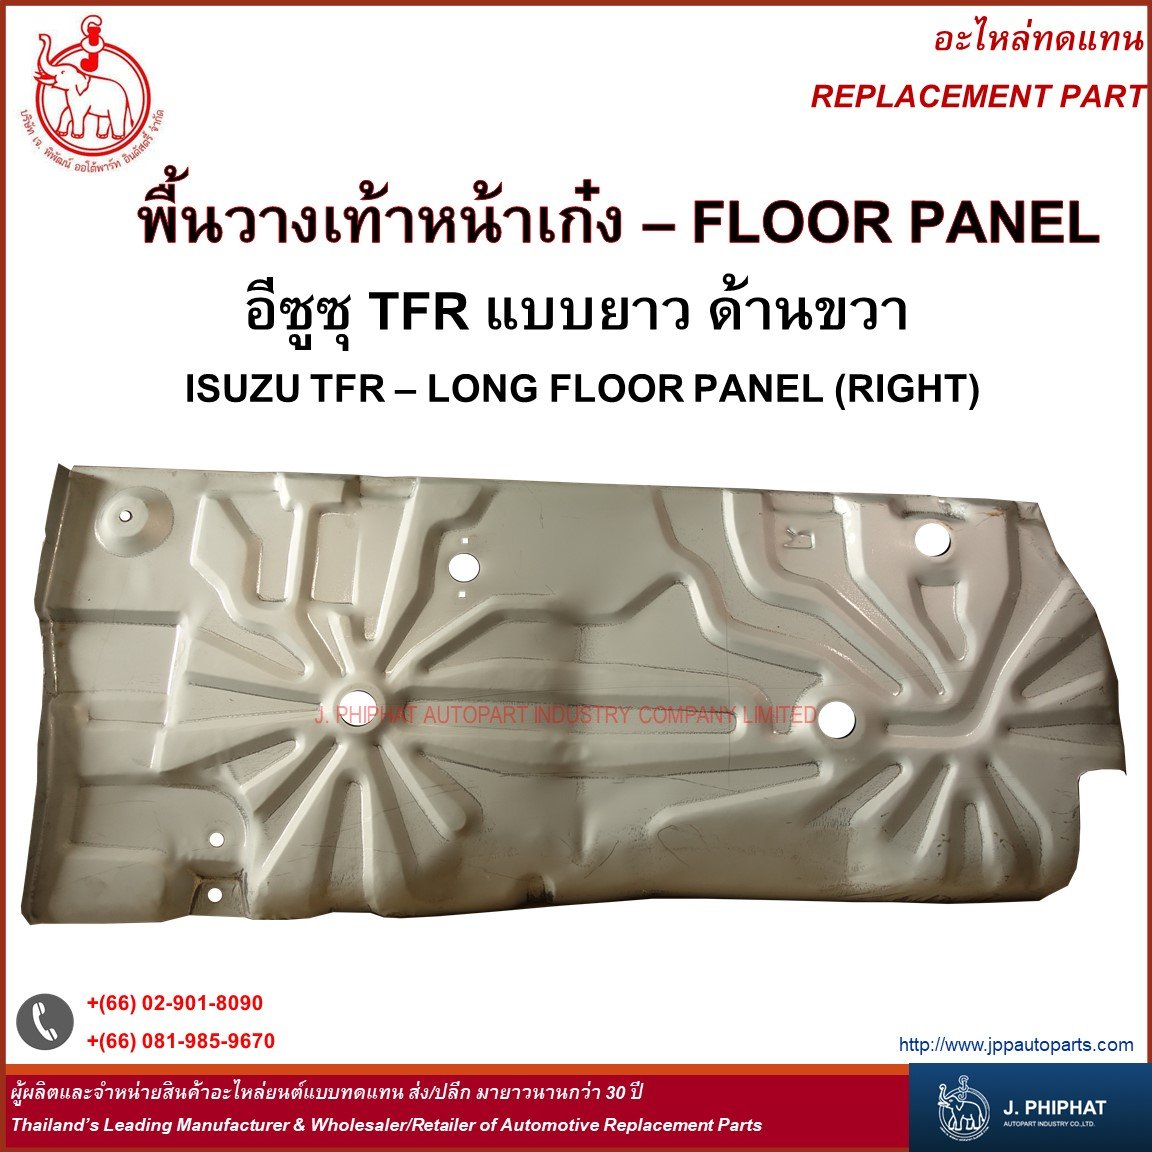 Floor Panel - Isuzu TFR Long floor panel - jppautoparts